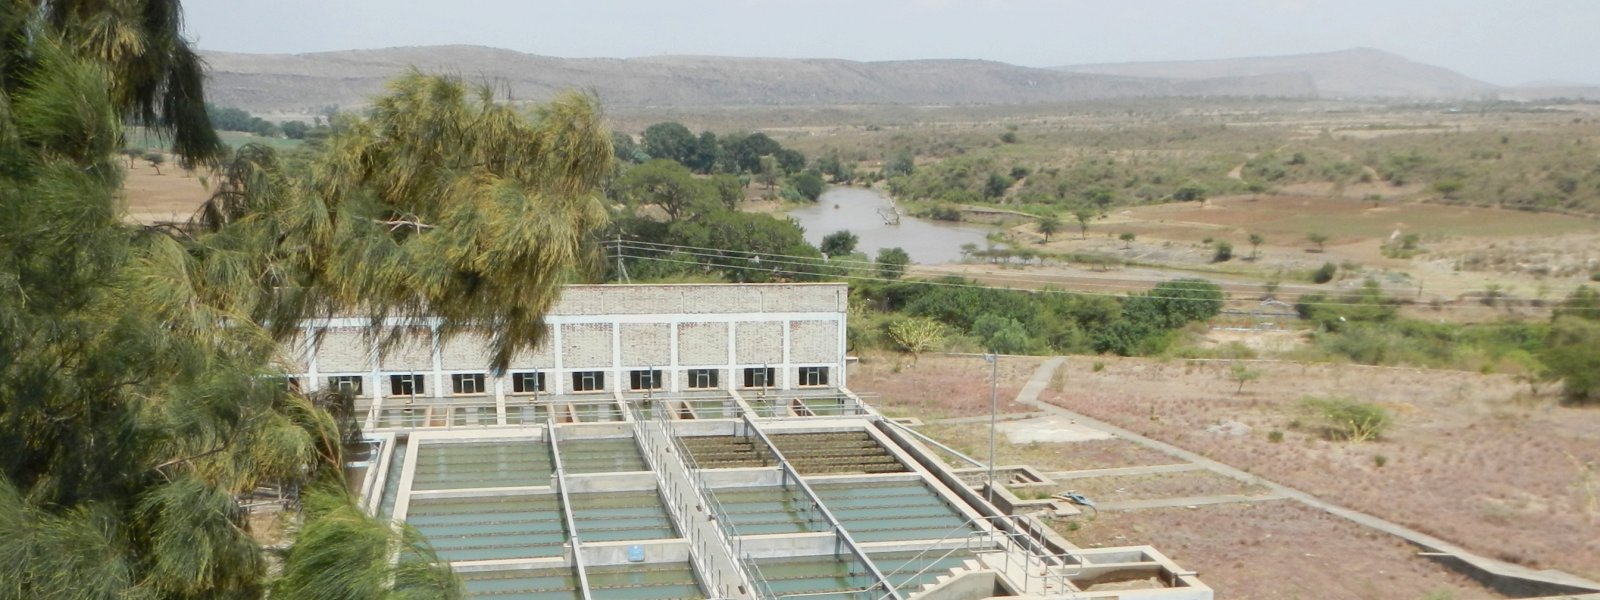 Erweiterung der Trinkwasseranlage Adama